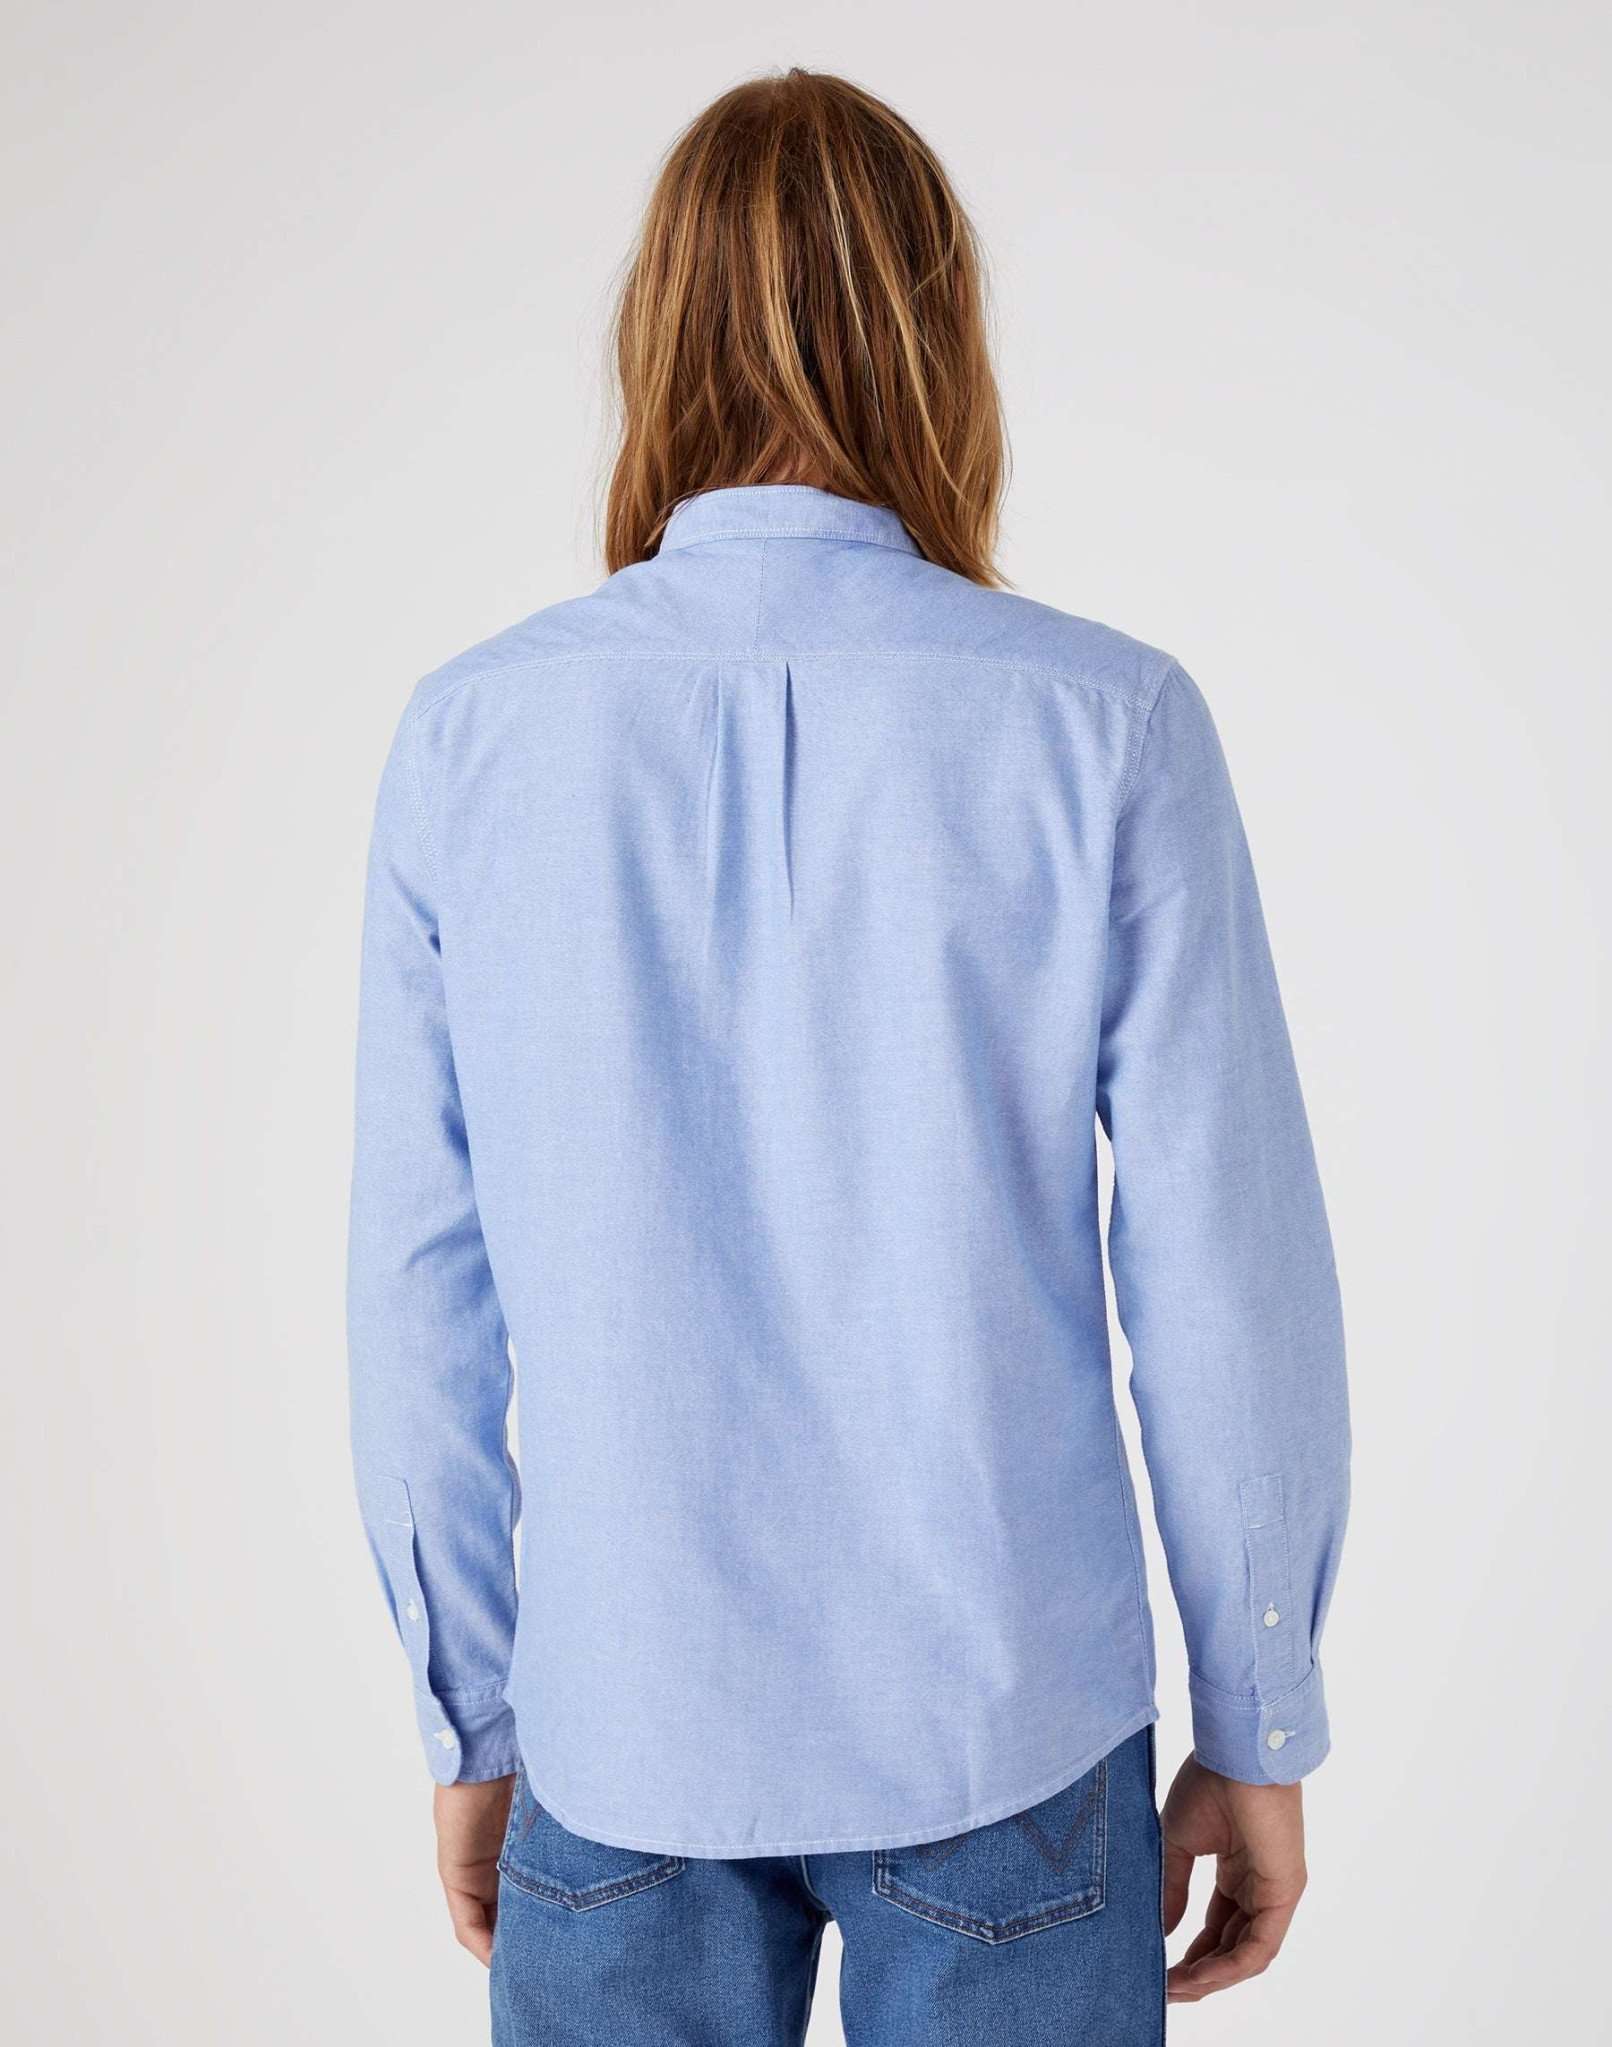 One Pocket Shirt in Limoges Blue Hemden Wrangler   